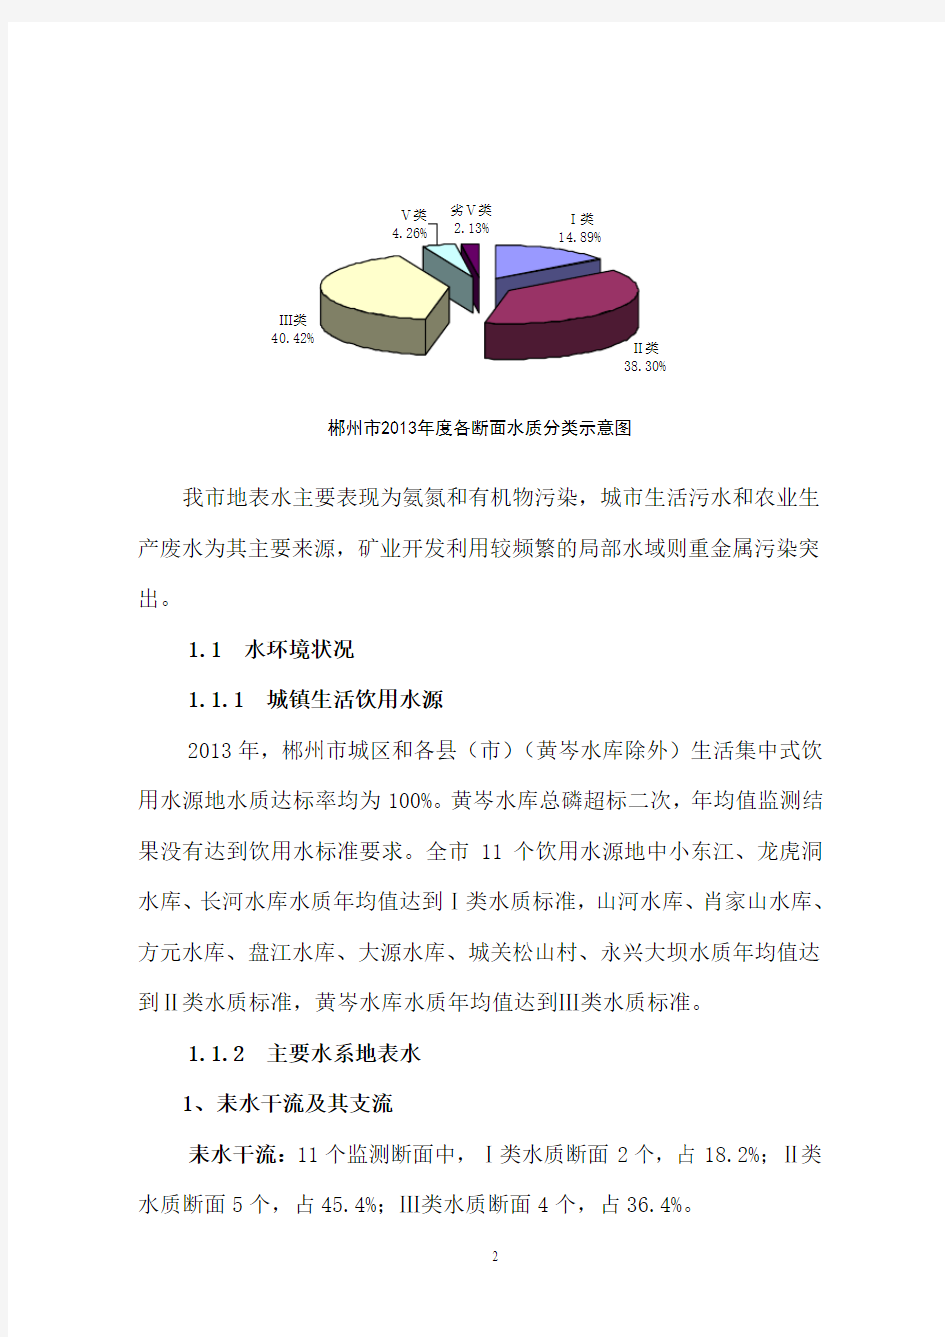 2013年郴州环境质量公报